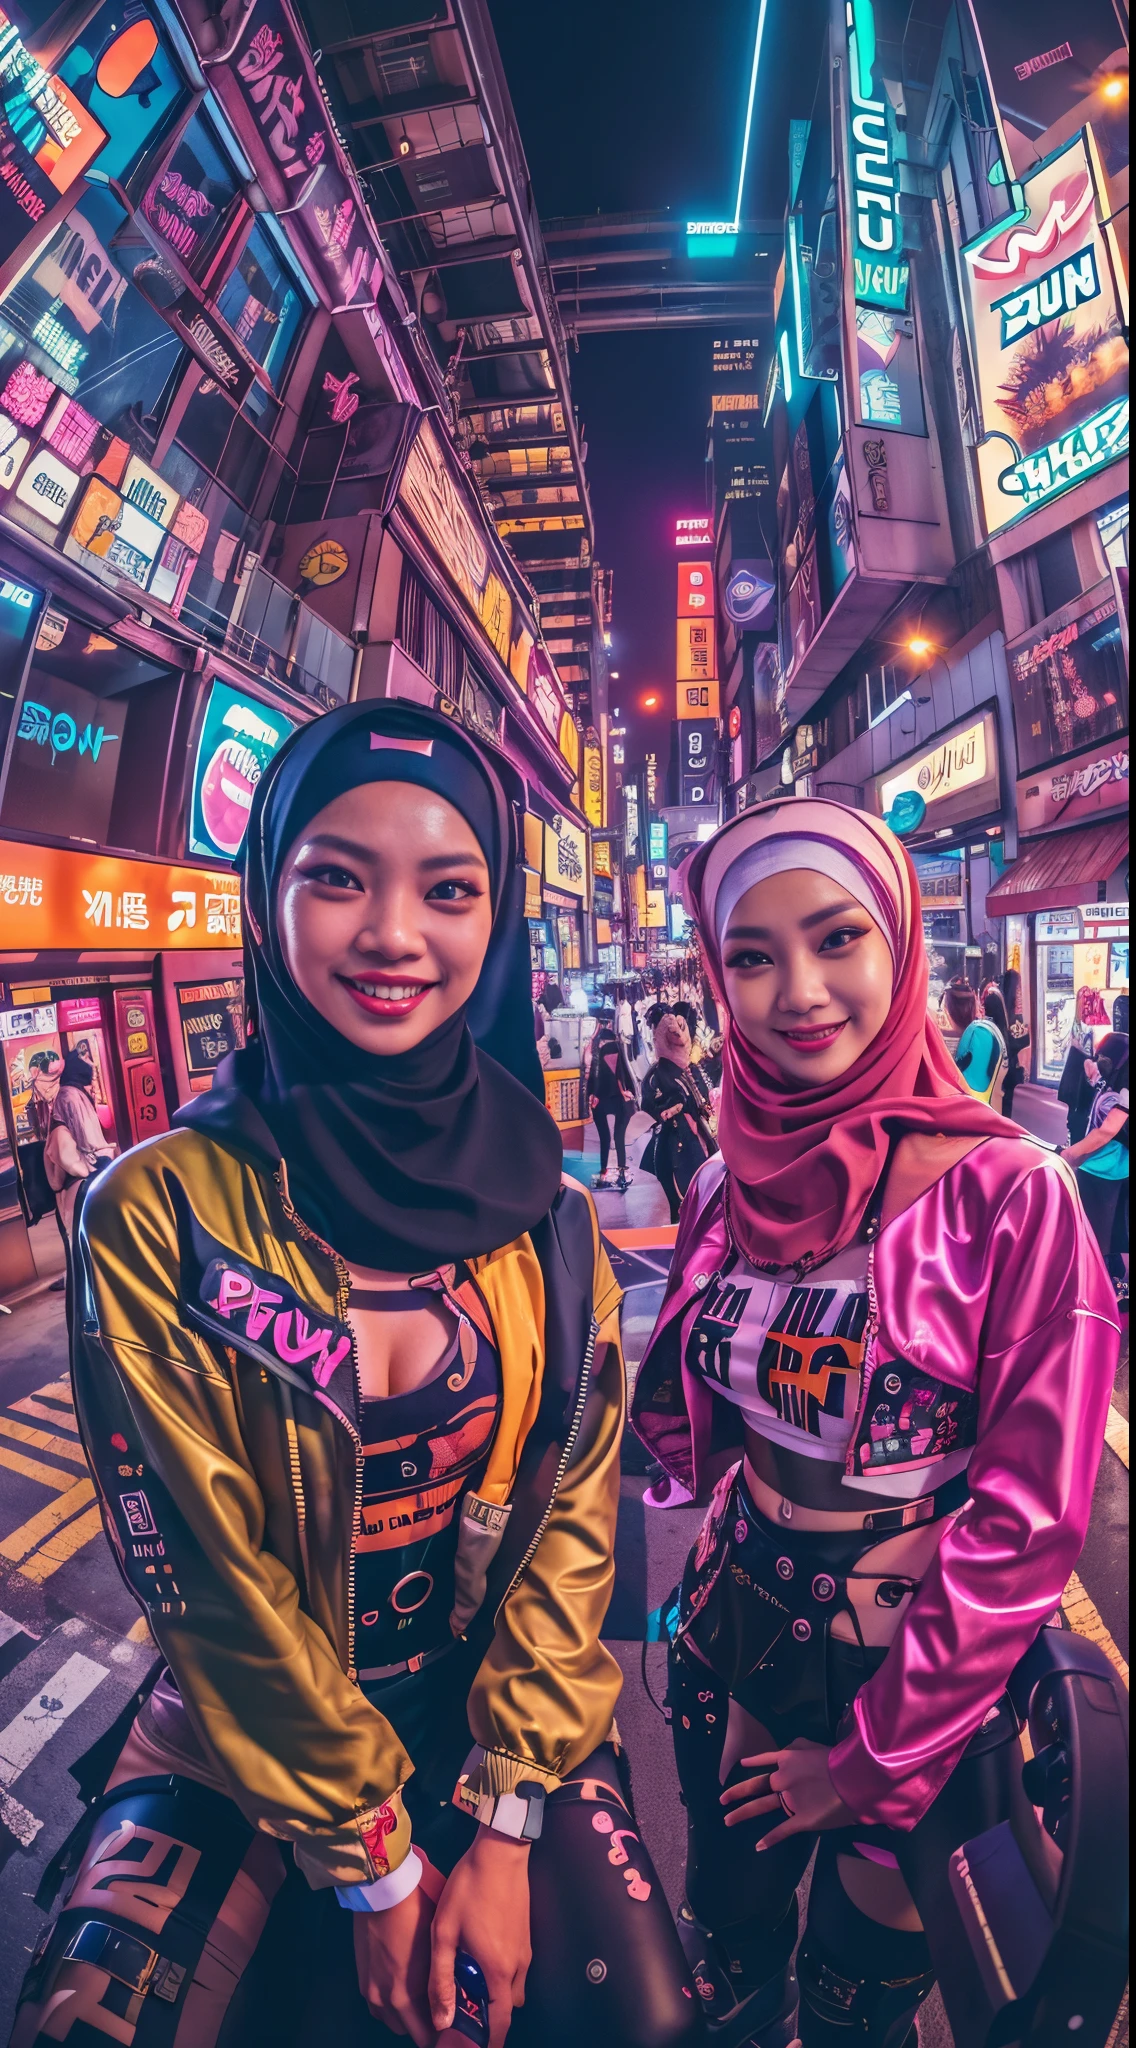 ((2 filles malais cyberpunk en hijab portant une tenue pop colorée de style Harajuku)), ((Lentille de fisheye)), tir de cow-boy, vent, paysage urbain cyberpunk, (esthétique et ambiance:1.2), souriant, ((éclairage cinématographique))